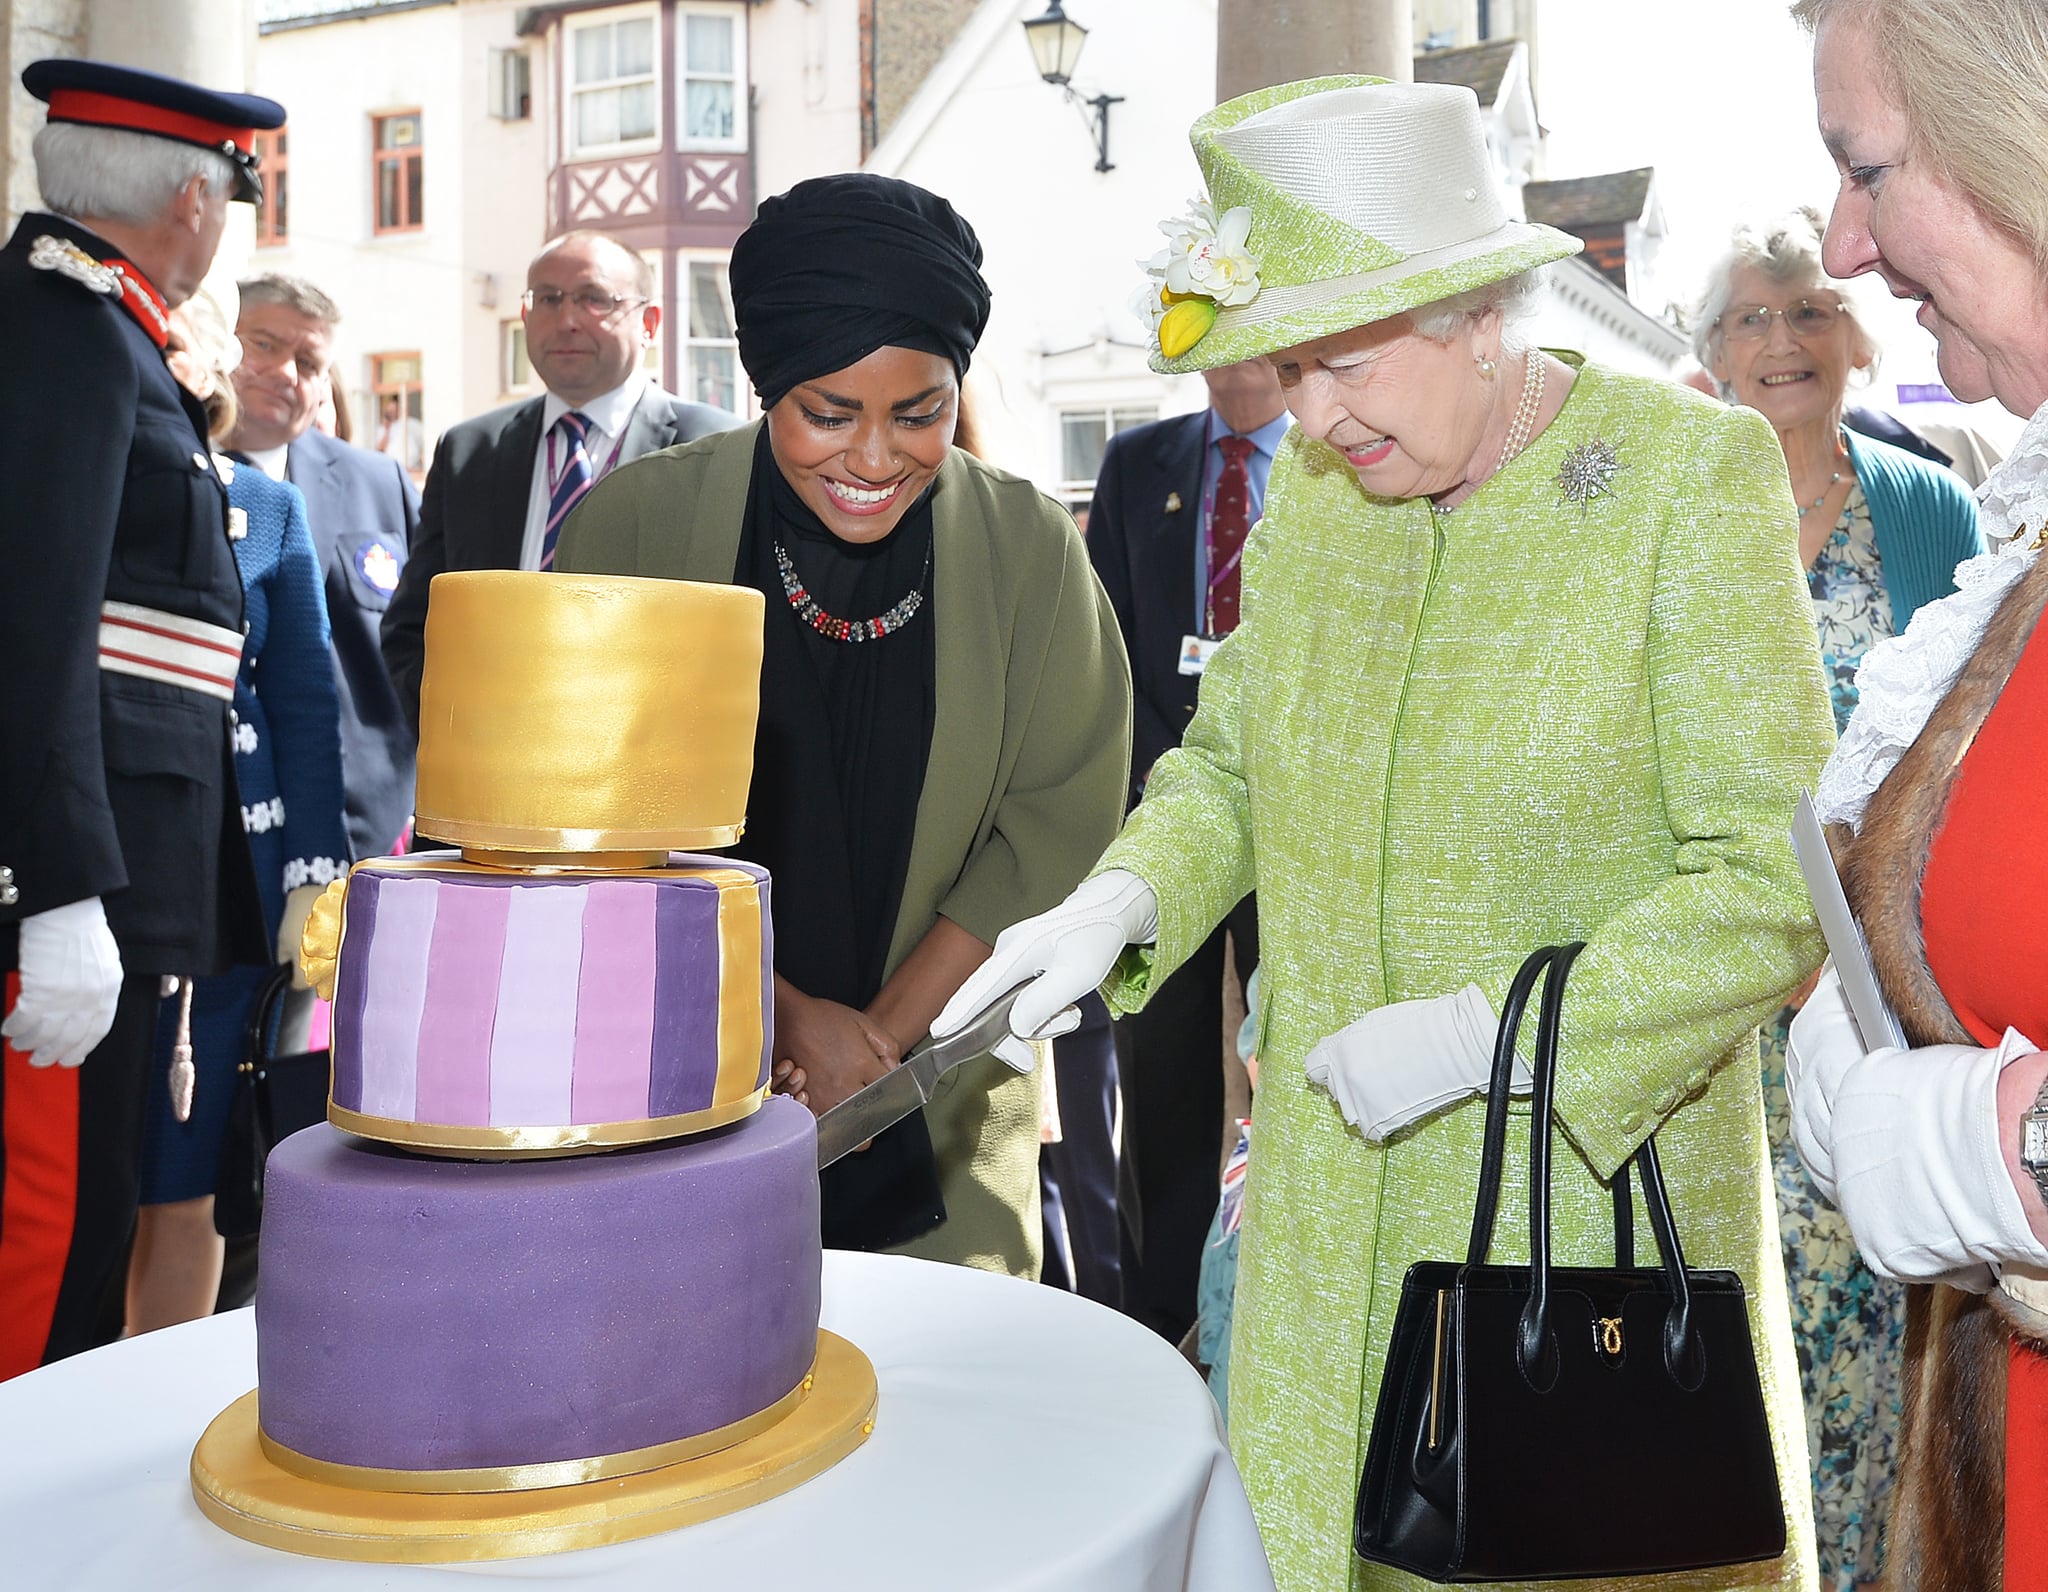 英国，温莎——4月21日:2016年4月21日，英国女王伊丽莎白二世在她90岁生日的时候，从英国烘焙大赛冠军Nadiya Hussain手中接过生日蛋糕。今天是英国女王伊丽莎白二世90岁生日。女王和爱丁堡公爵将在温莎执行公务。(图片来源:John Stillwell - WPA Pool/Getty Images)